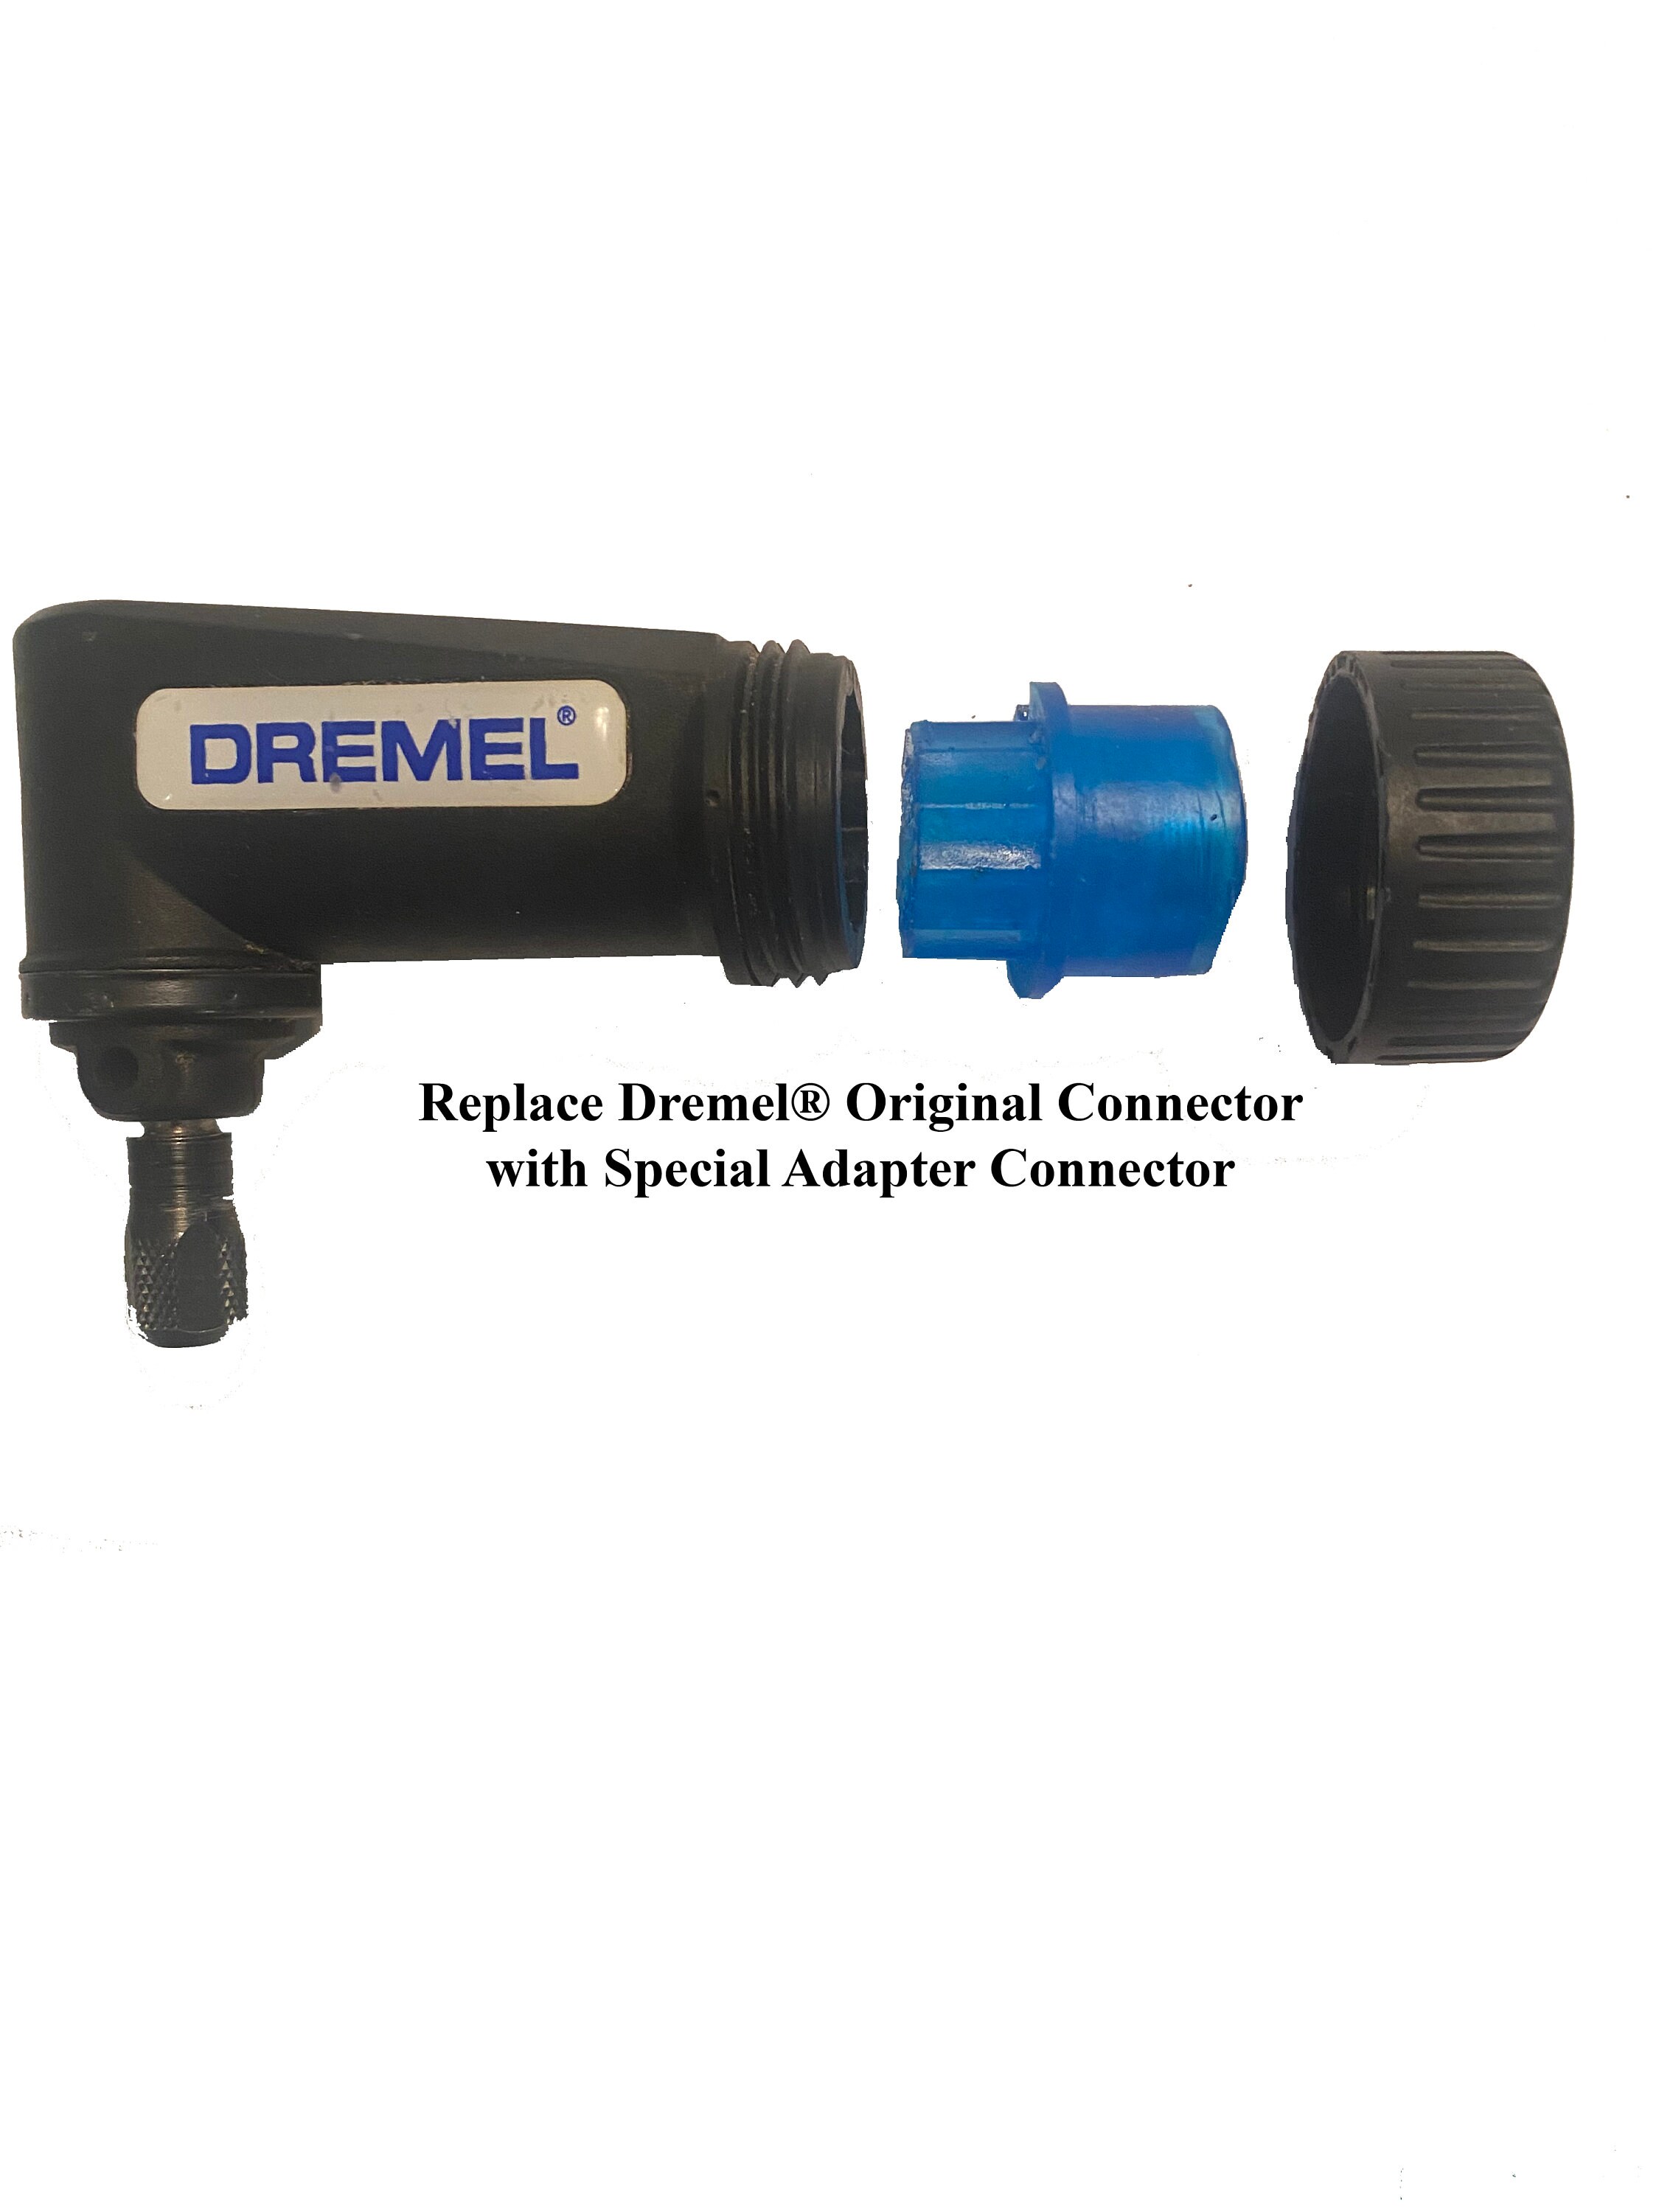 Dremel flex-shaft attachment 36 for Sale in Statesville, NC - OfferUp